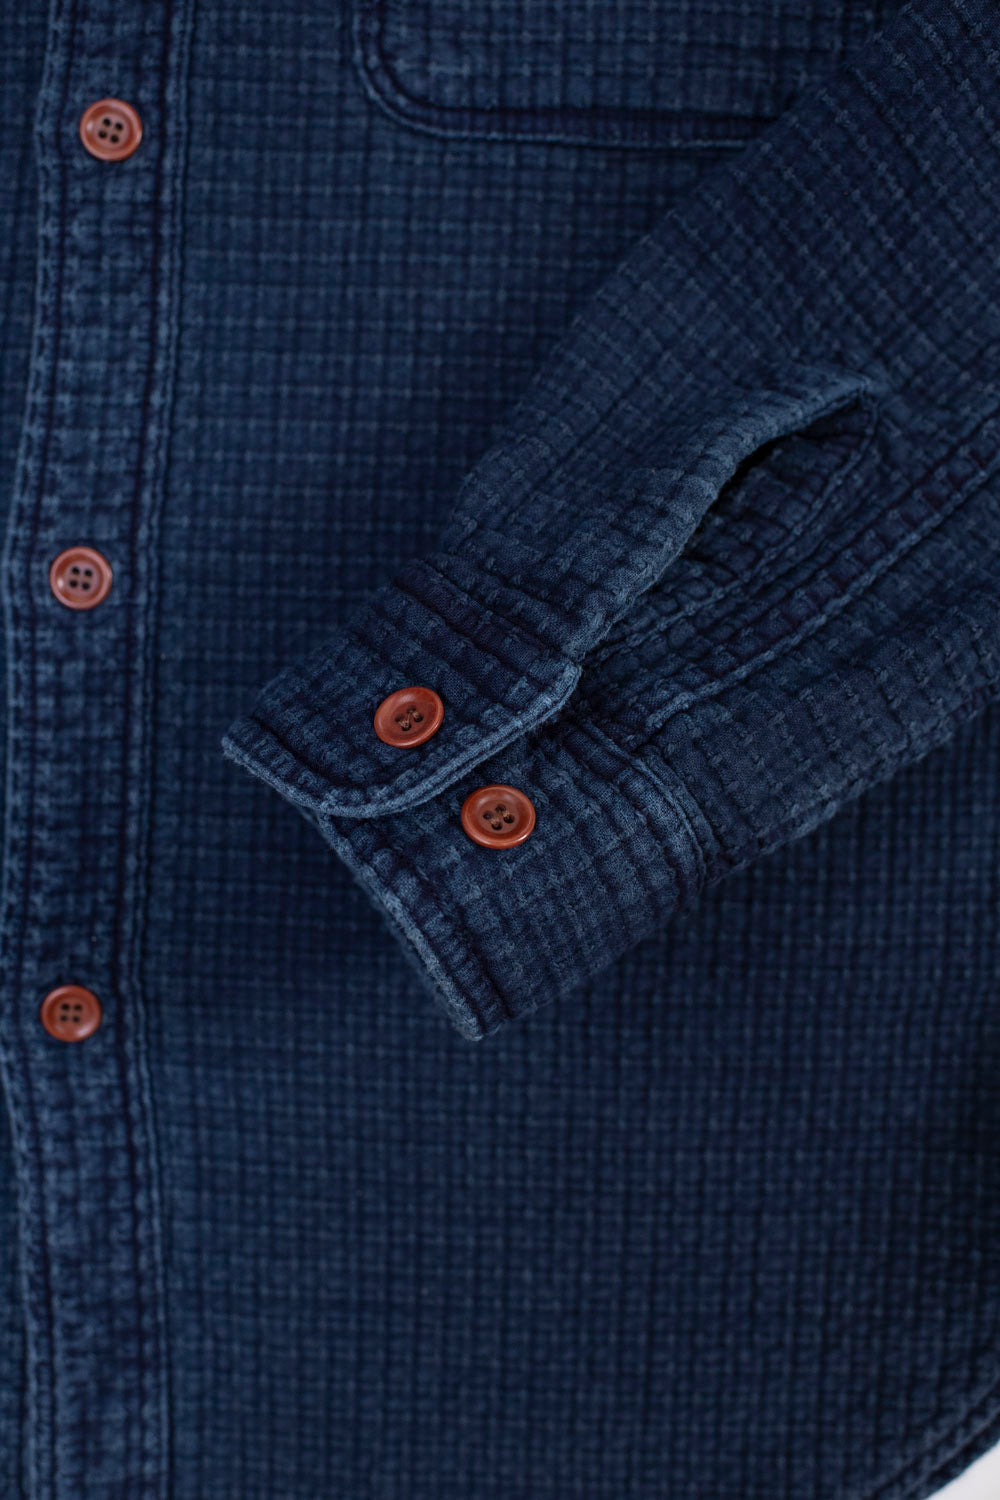 5689 - Stitched Sashiko Shirt - Indigo